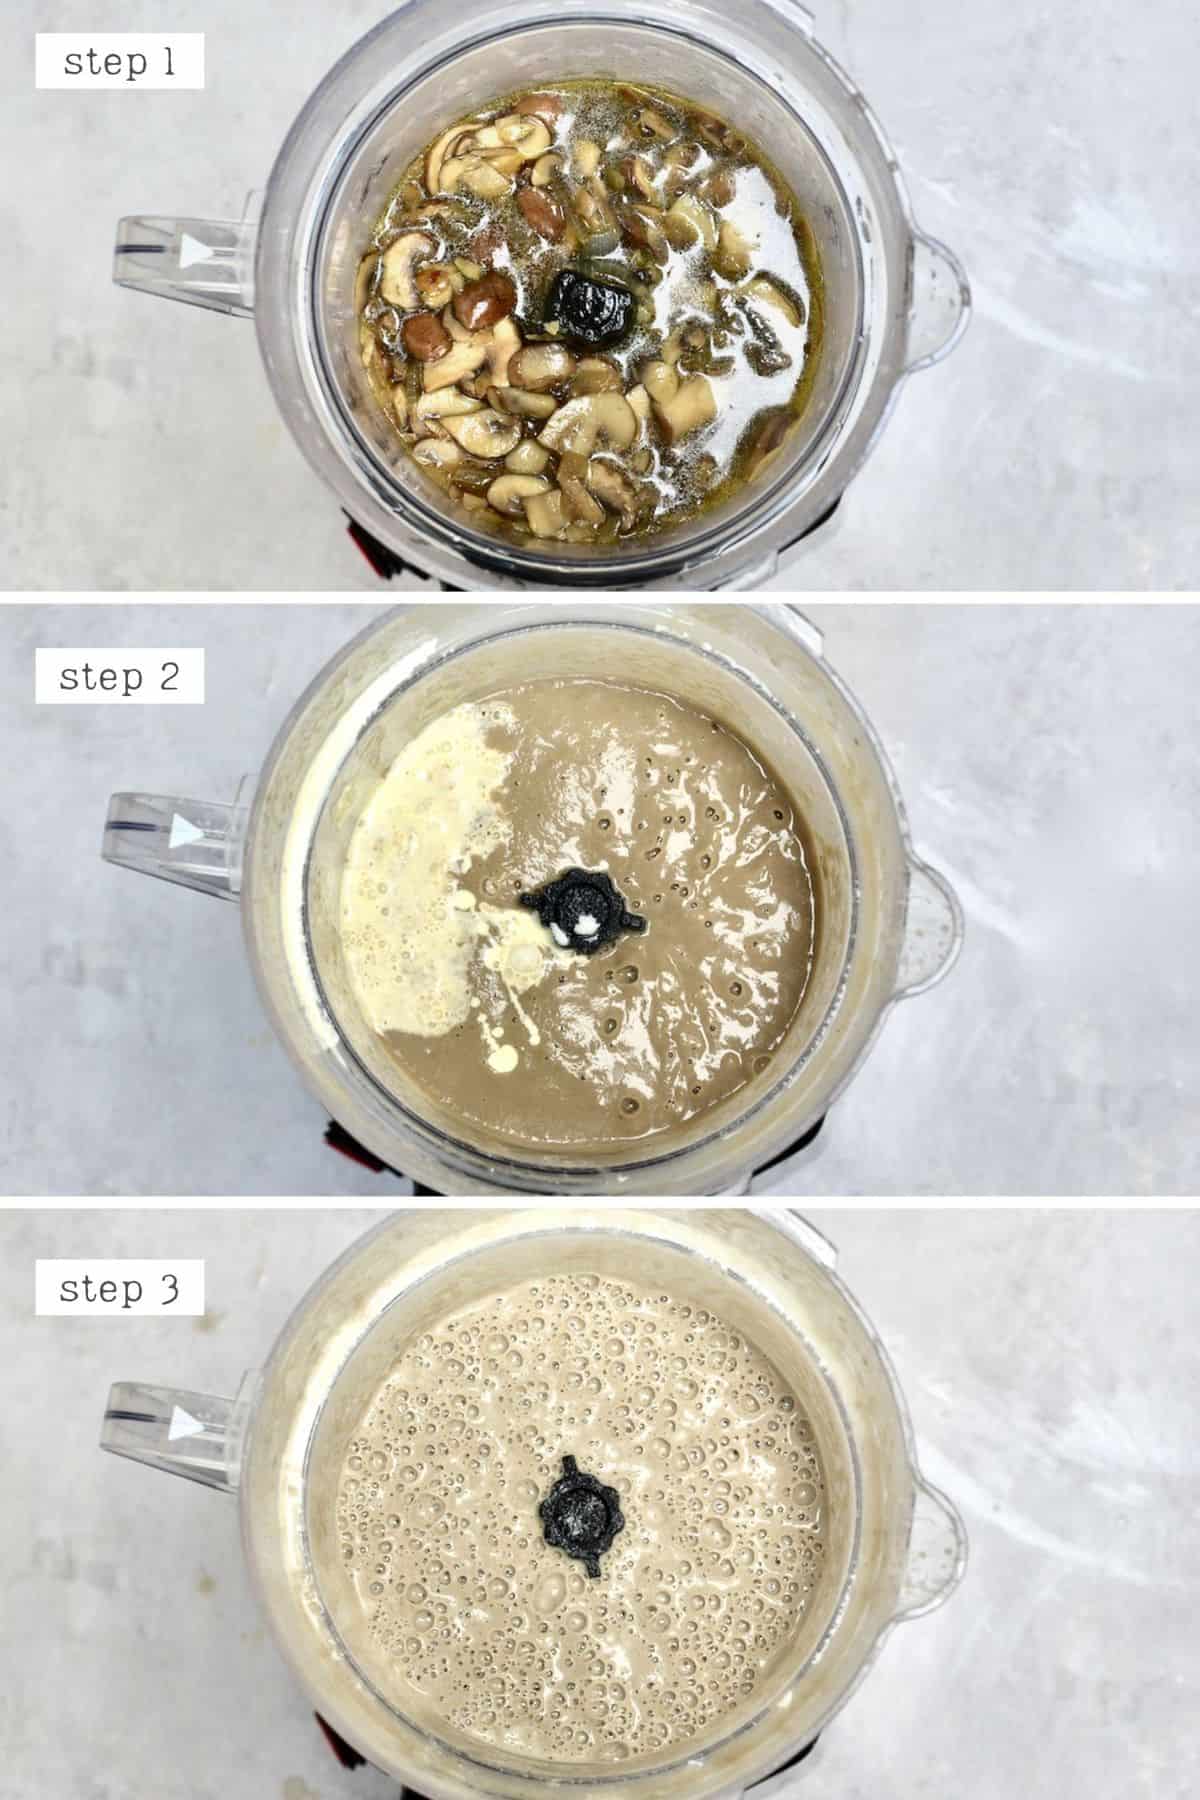 Steps for making mushroom soup